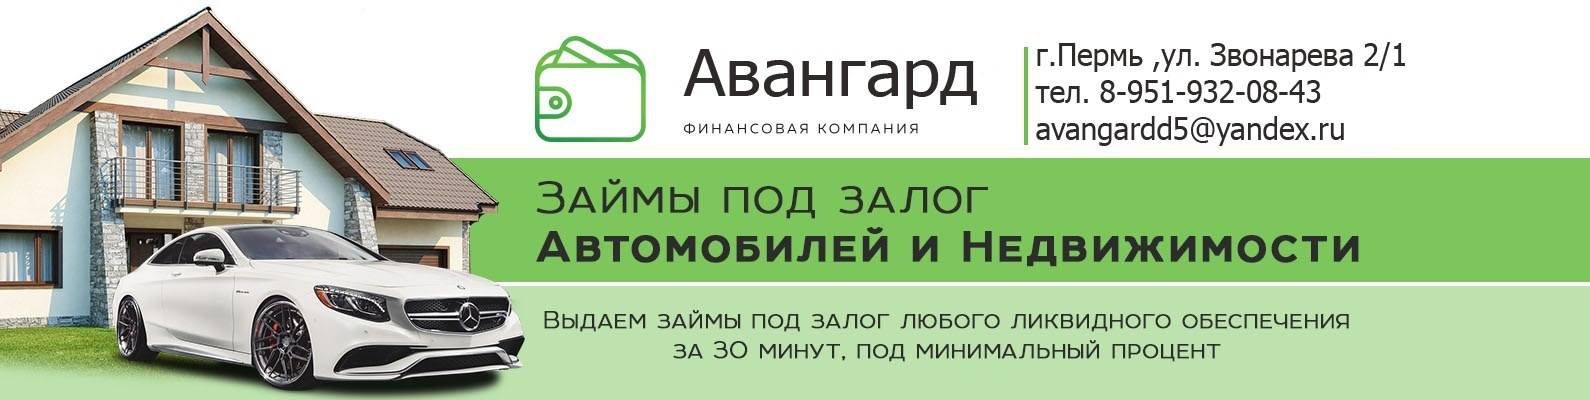 Кредиты в московском кредитном банке под залог квартиры